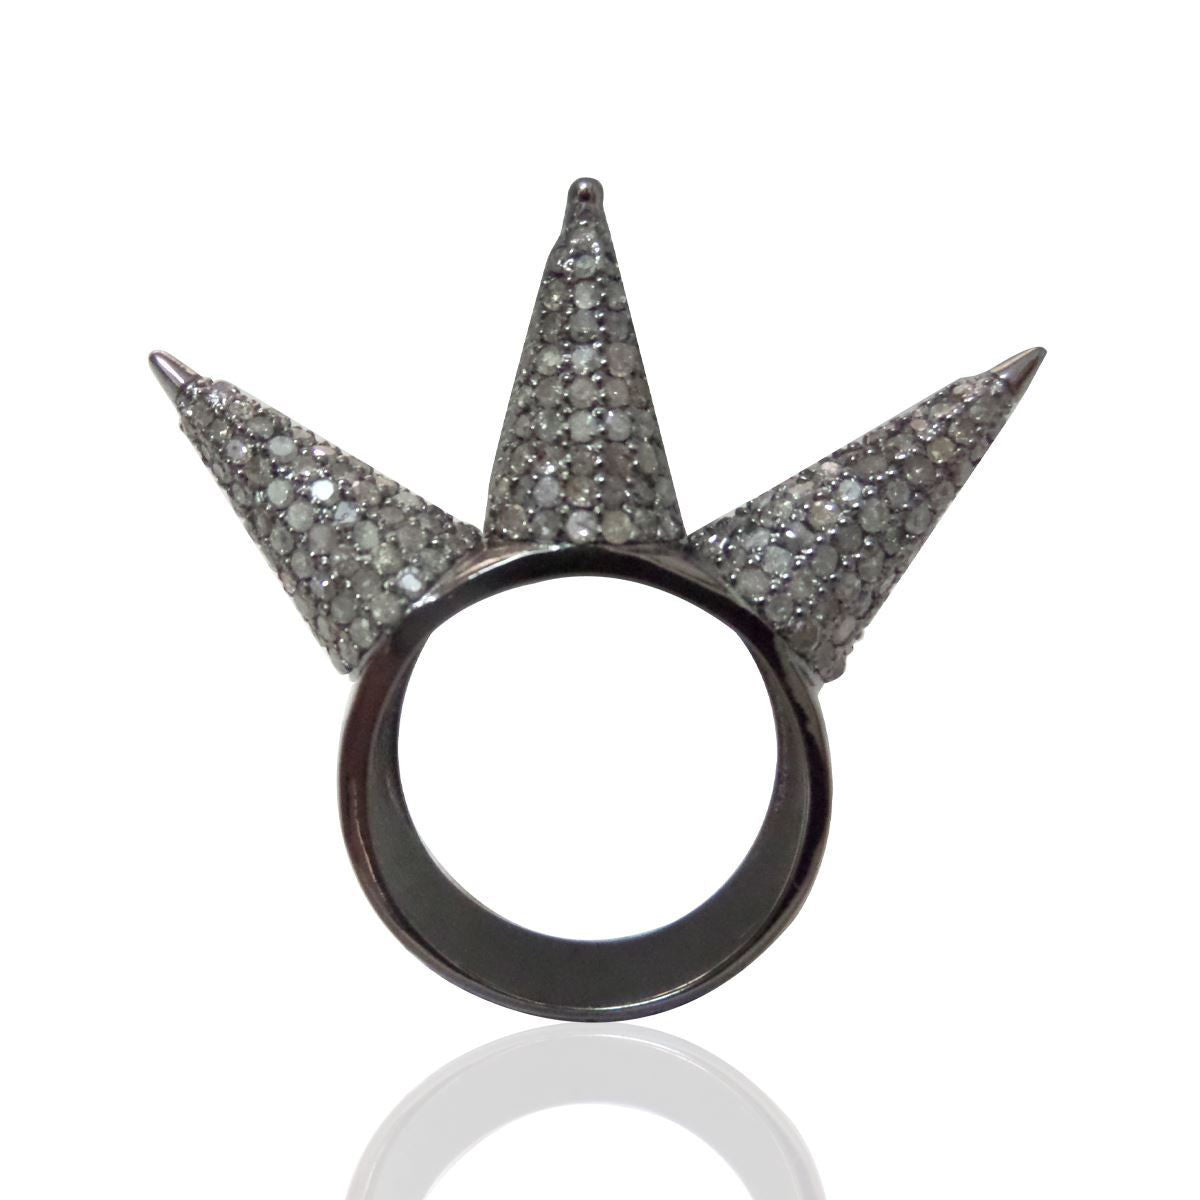 Diamond Three Cone Diamond Ring, Pave Diamond Ring, Pave Three Cone Ring, Approx 5 x 27mm. Sterling Silver